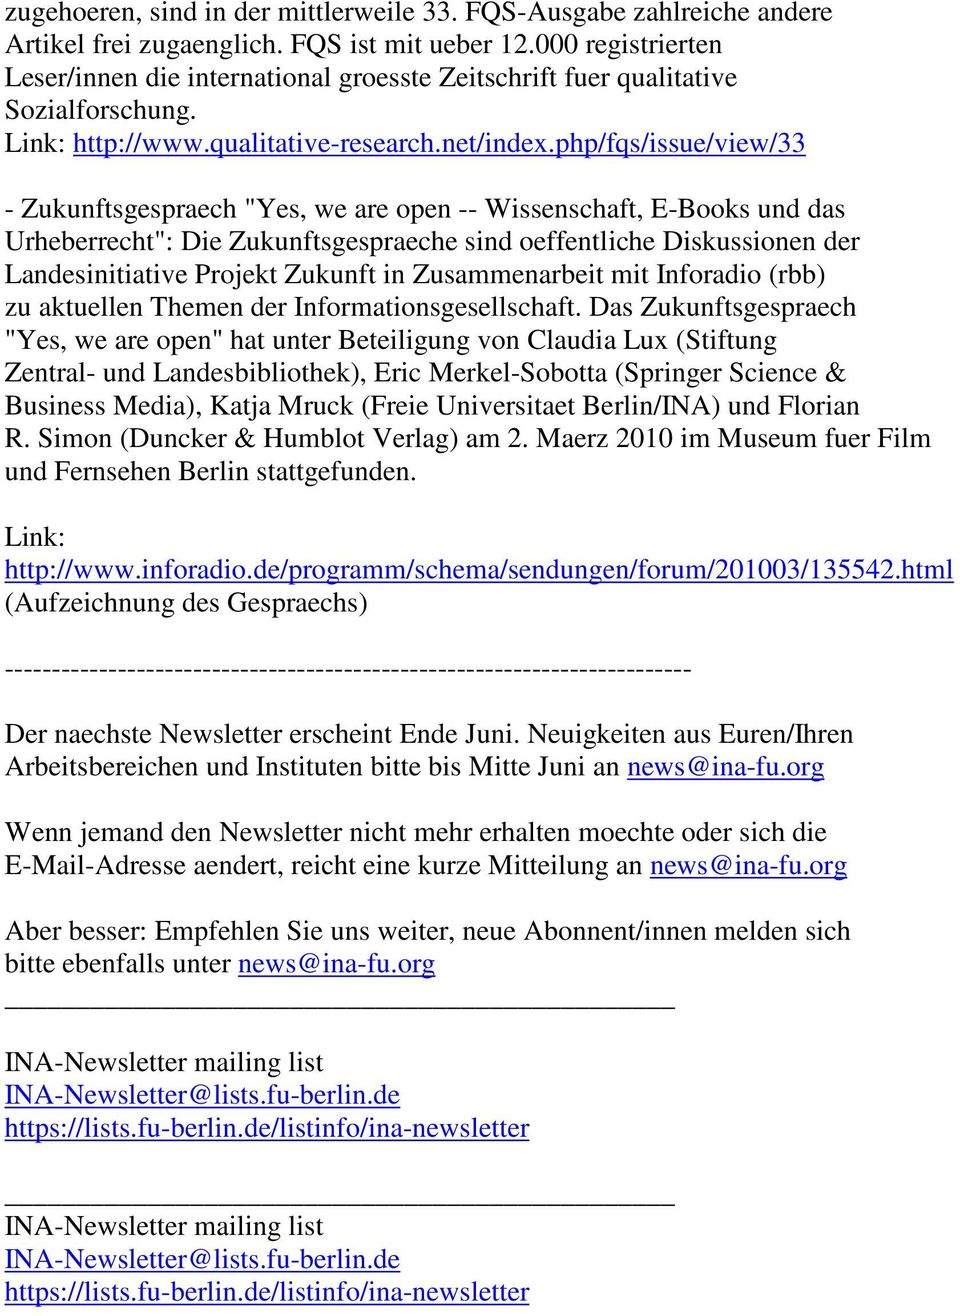 php/fqs/issue/view/33 - Zukunftsgespraech "Yes, we are open -- Wissenschaft, E-Books und das Urheberrecht": Die Zukunftsgespraeche sind oeffentliche Diskussionen der Landesinitiative Projekt Zukunft